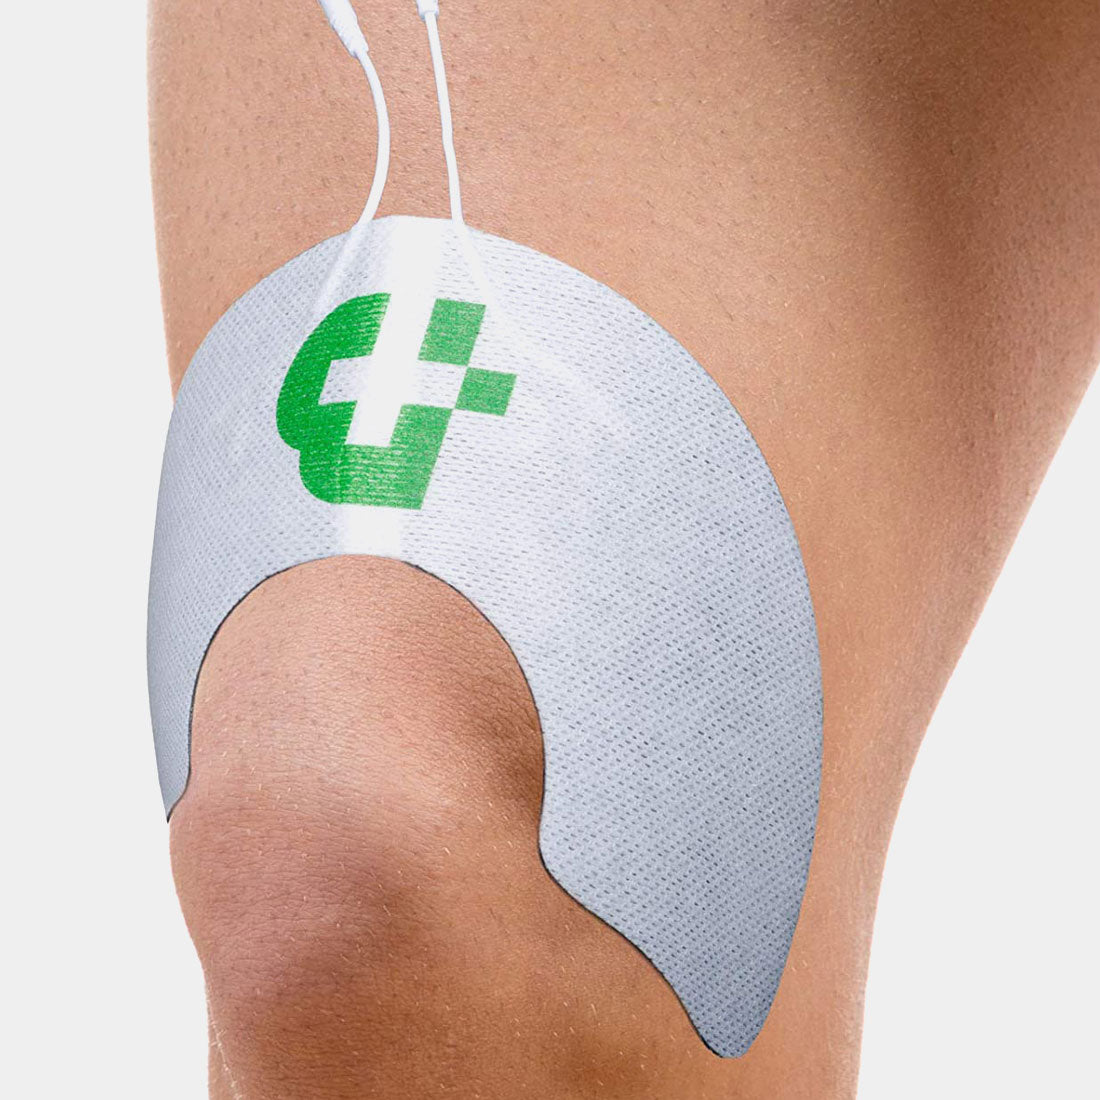 TESMED Knee 2 électrodes de qualité supérieure pour le genou, pas besoin de gel
